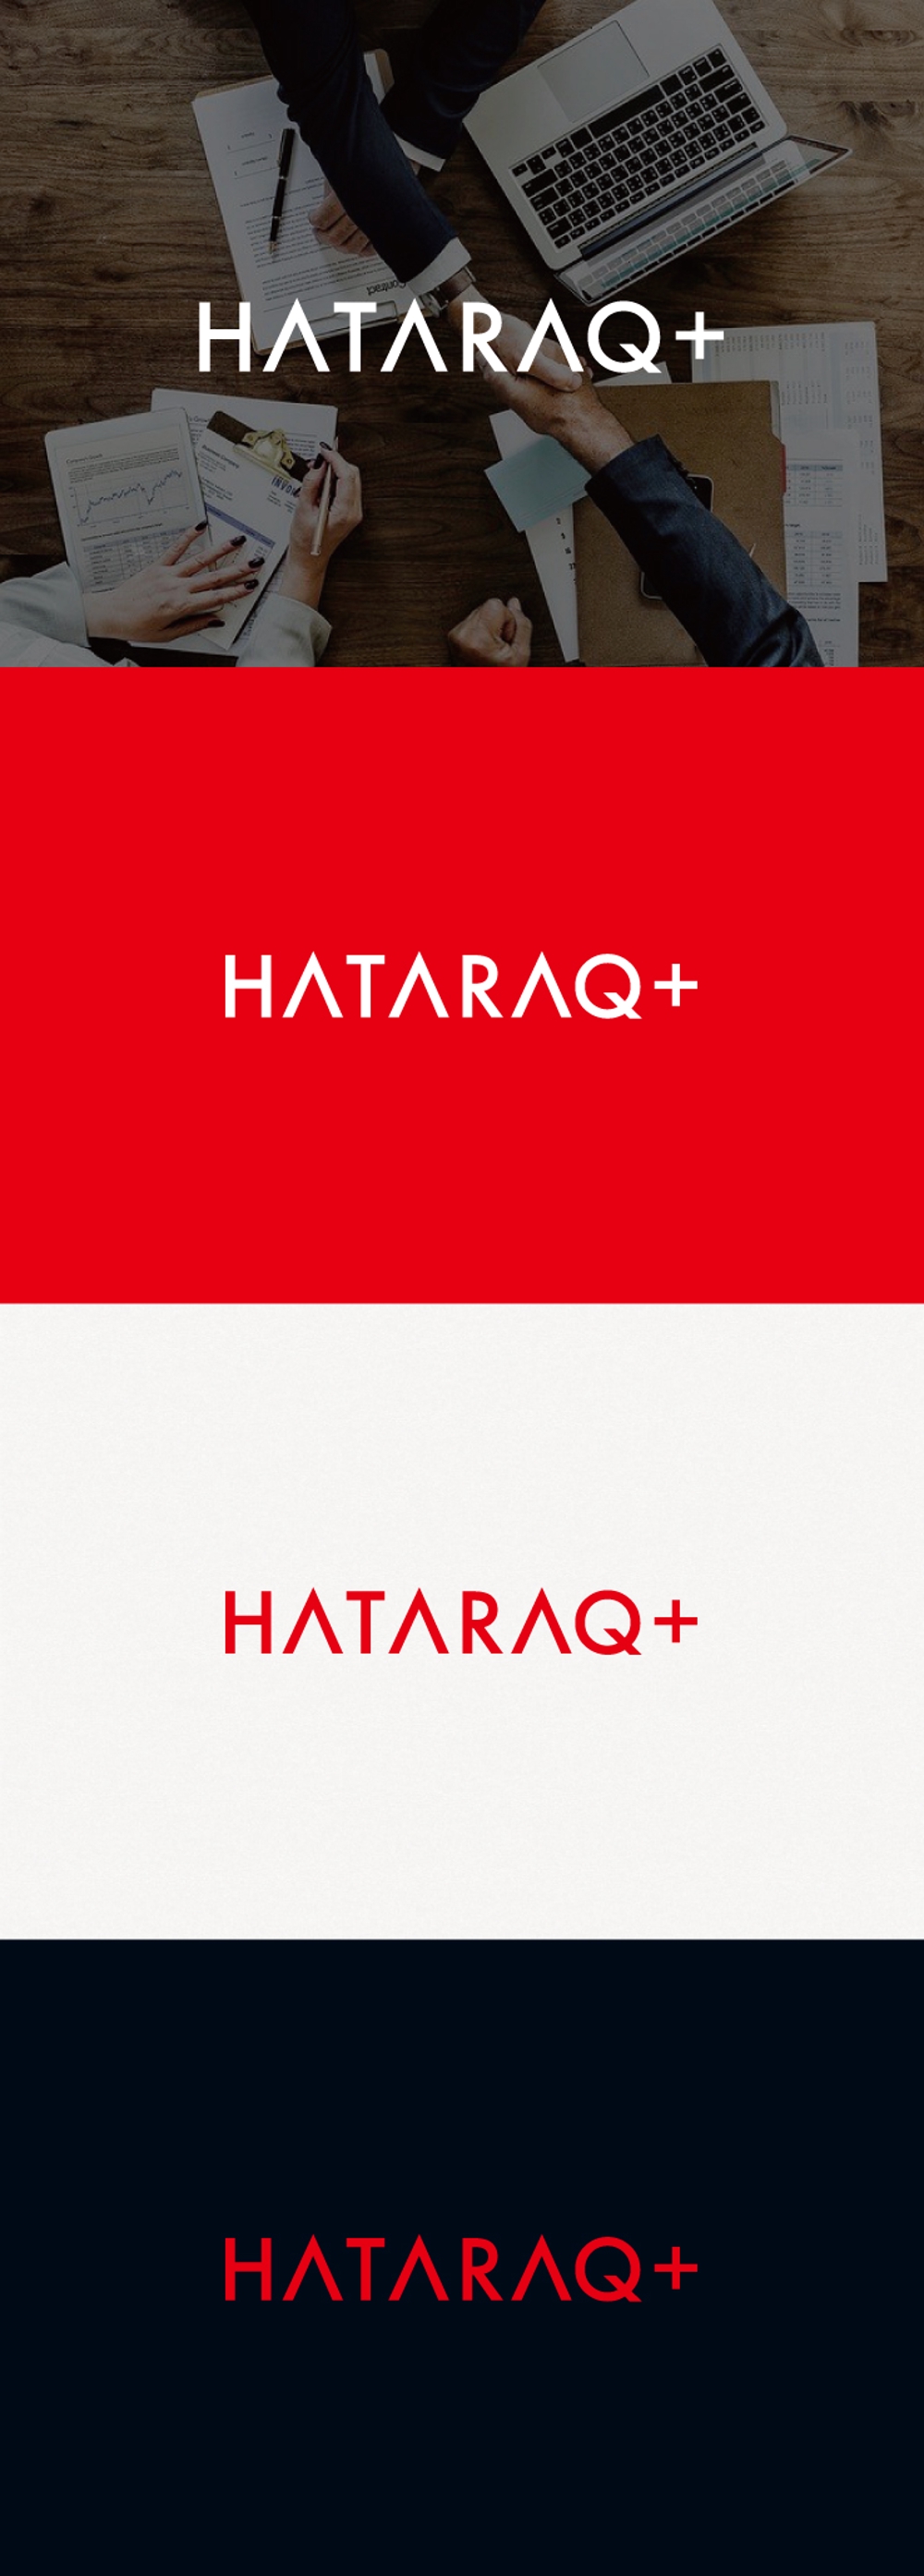 大学生のための就職・企業情報メディア「HATARAQ+」のロゴ制作